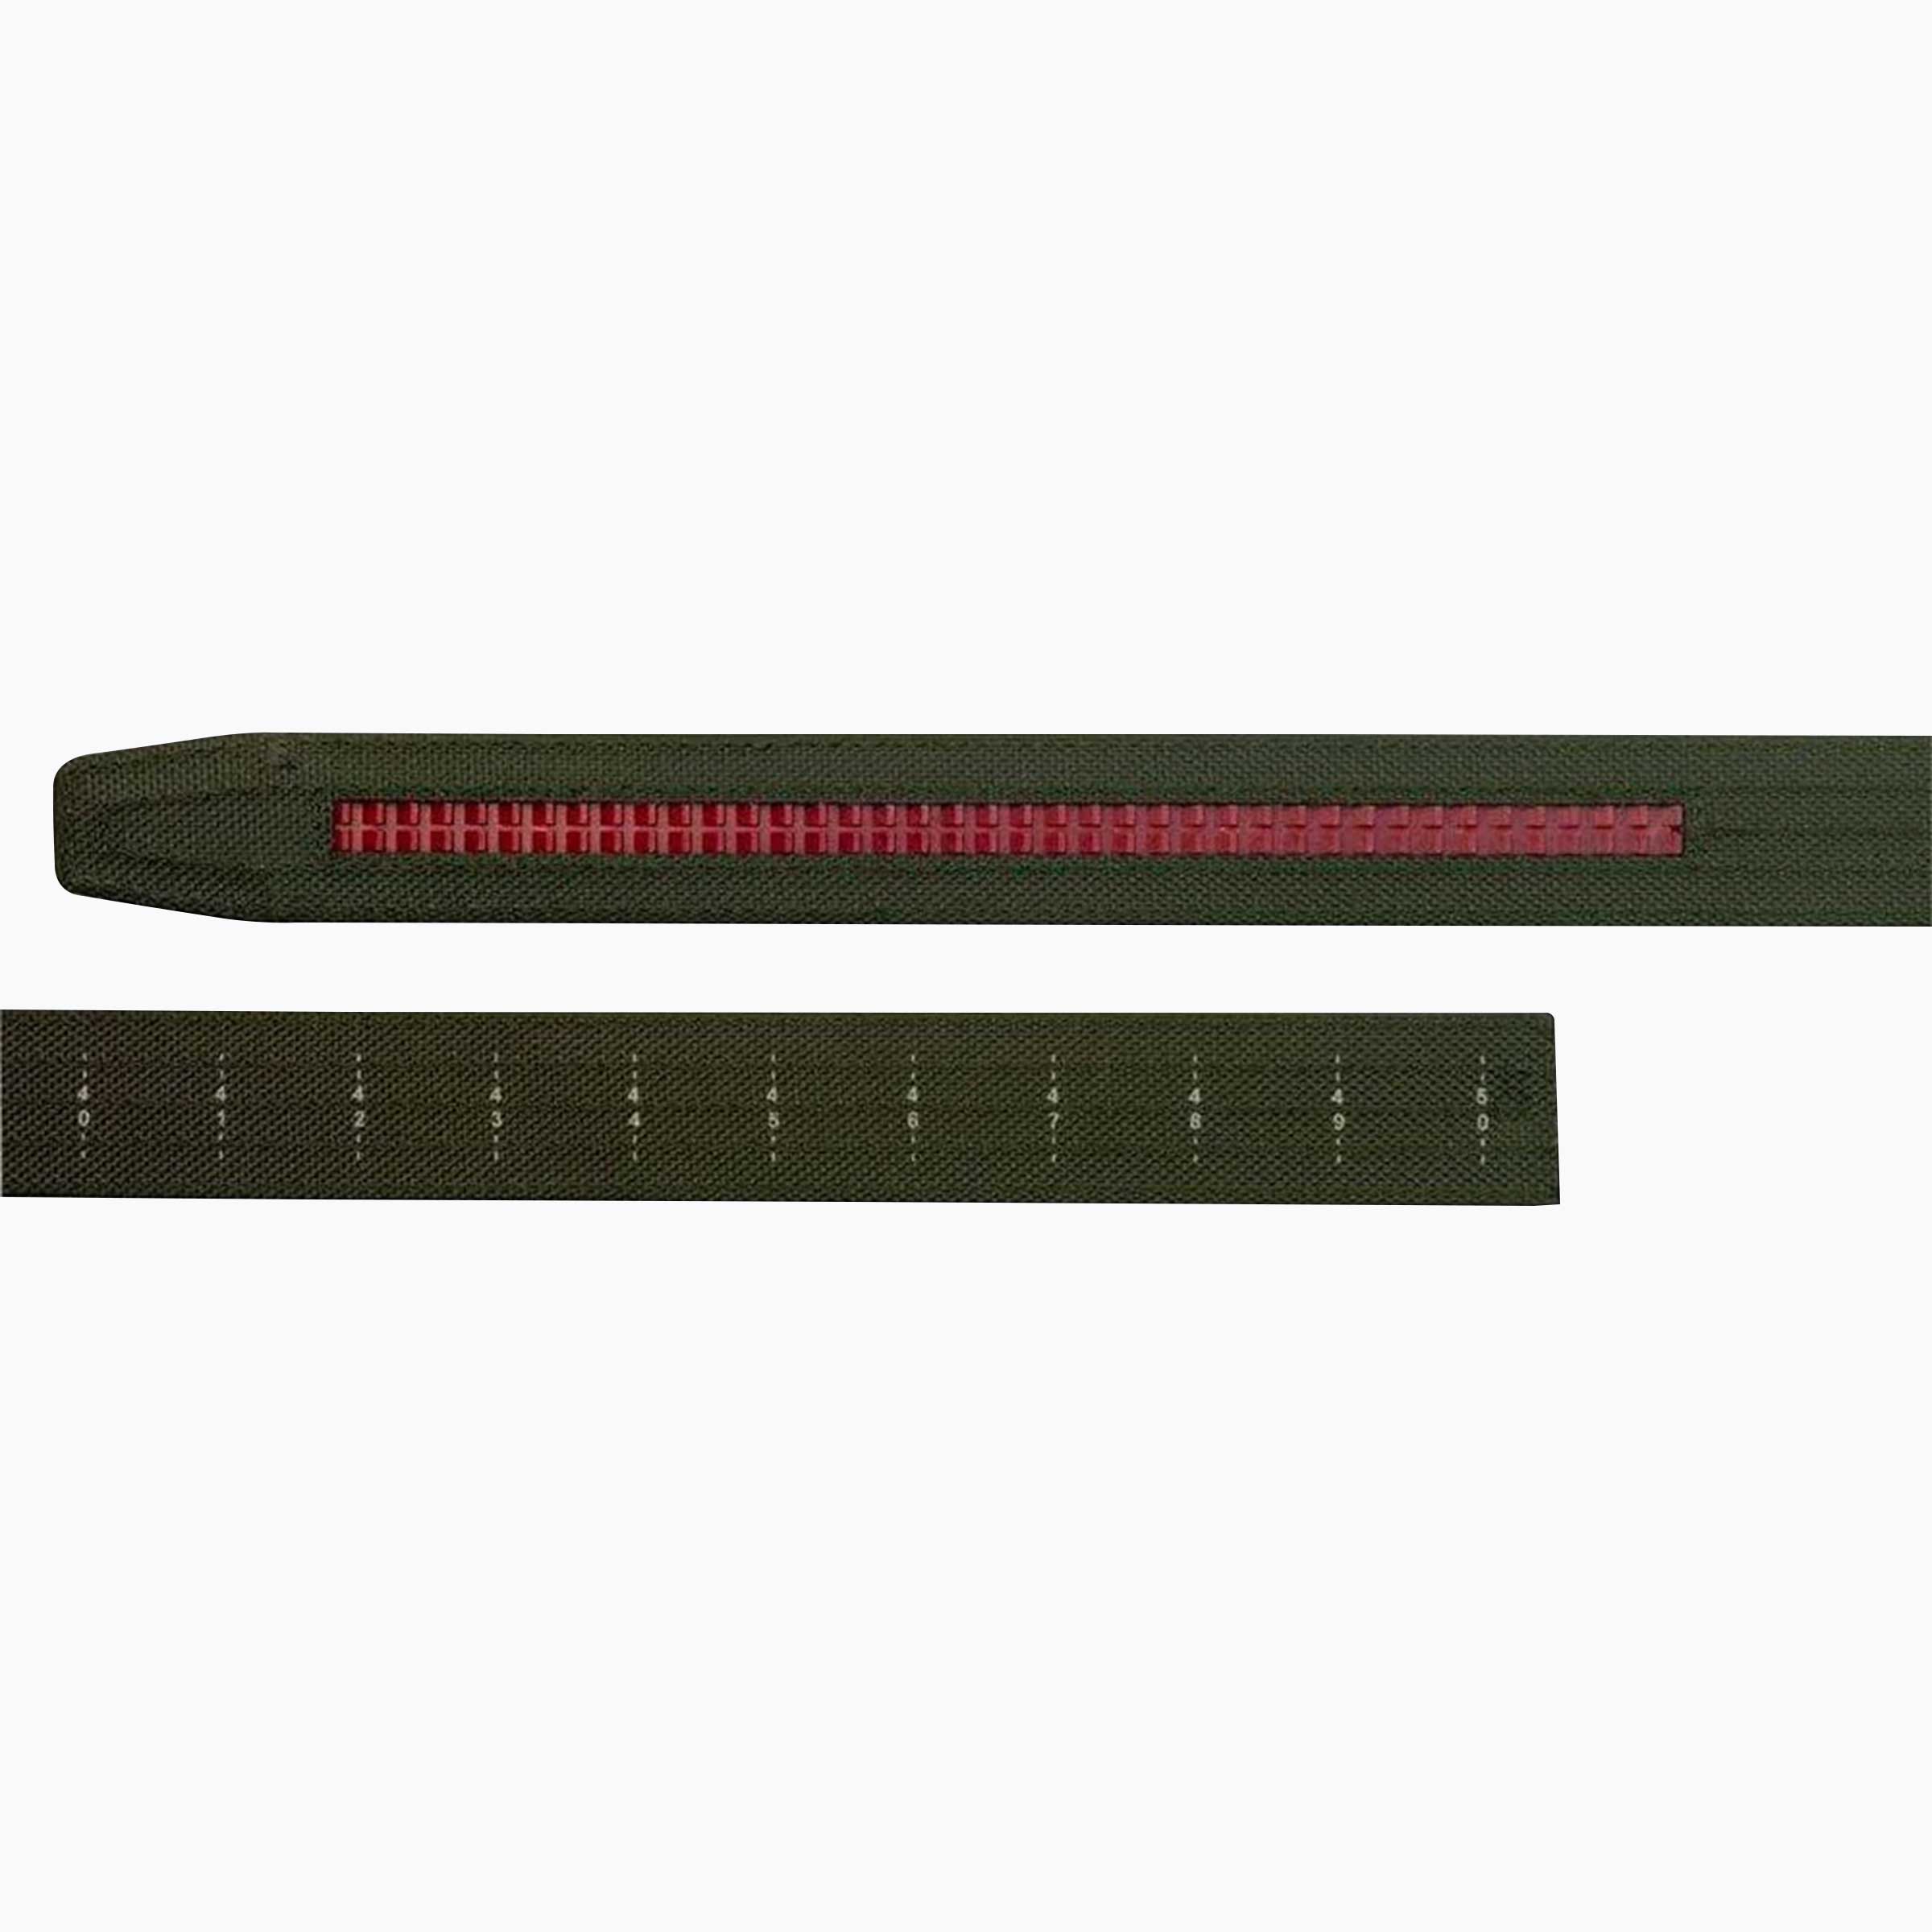 Titan OD Green EDC Belt 1.5" [38mm]